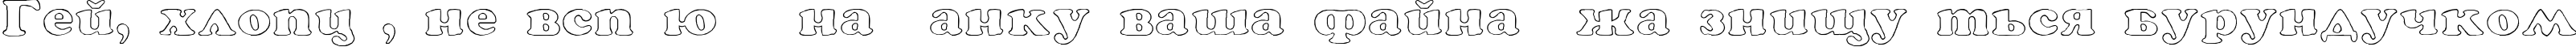 Пример написания шрифтом Rockletter Transparent текста на украинском